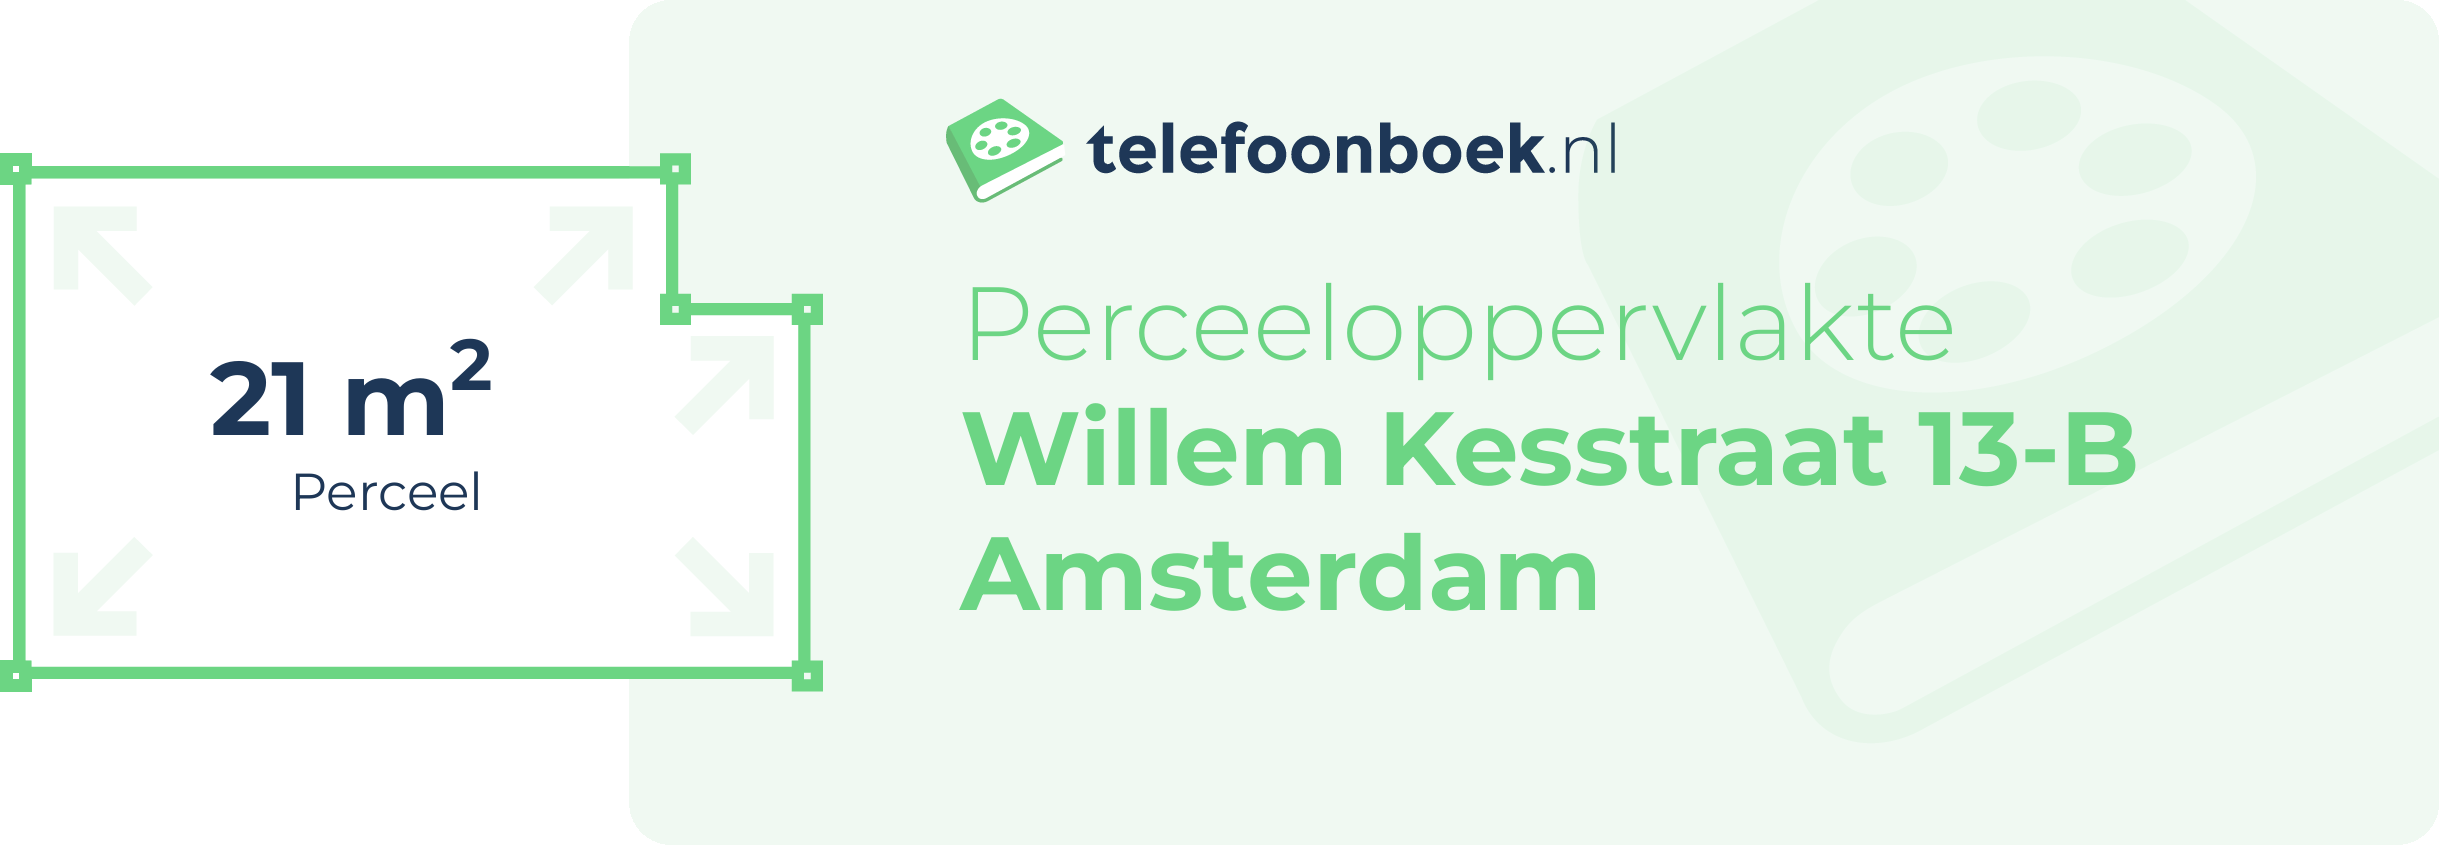 Perceeloppervlakte Willem Kesstraat 13-B Amsterdam